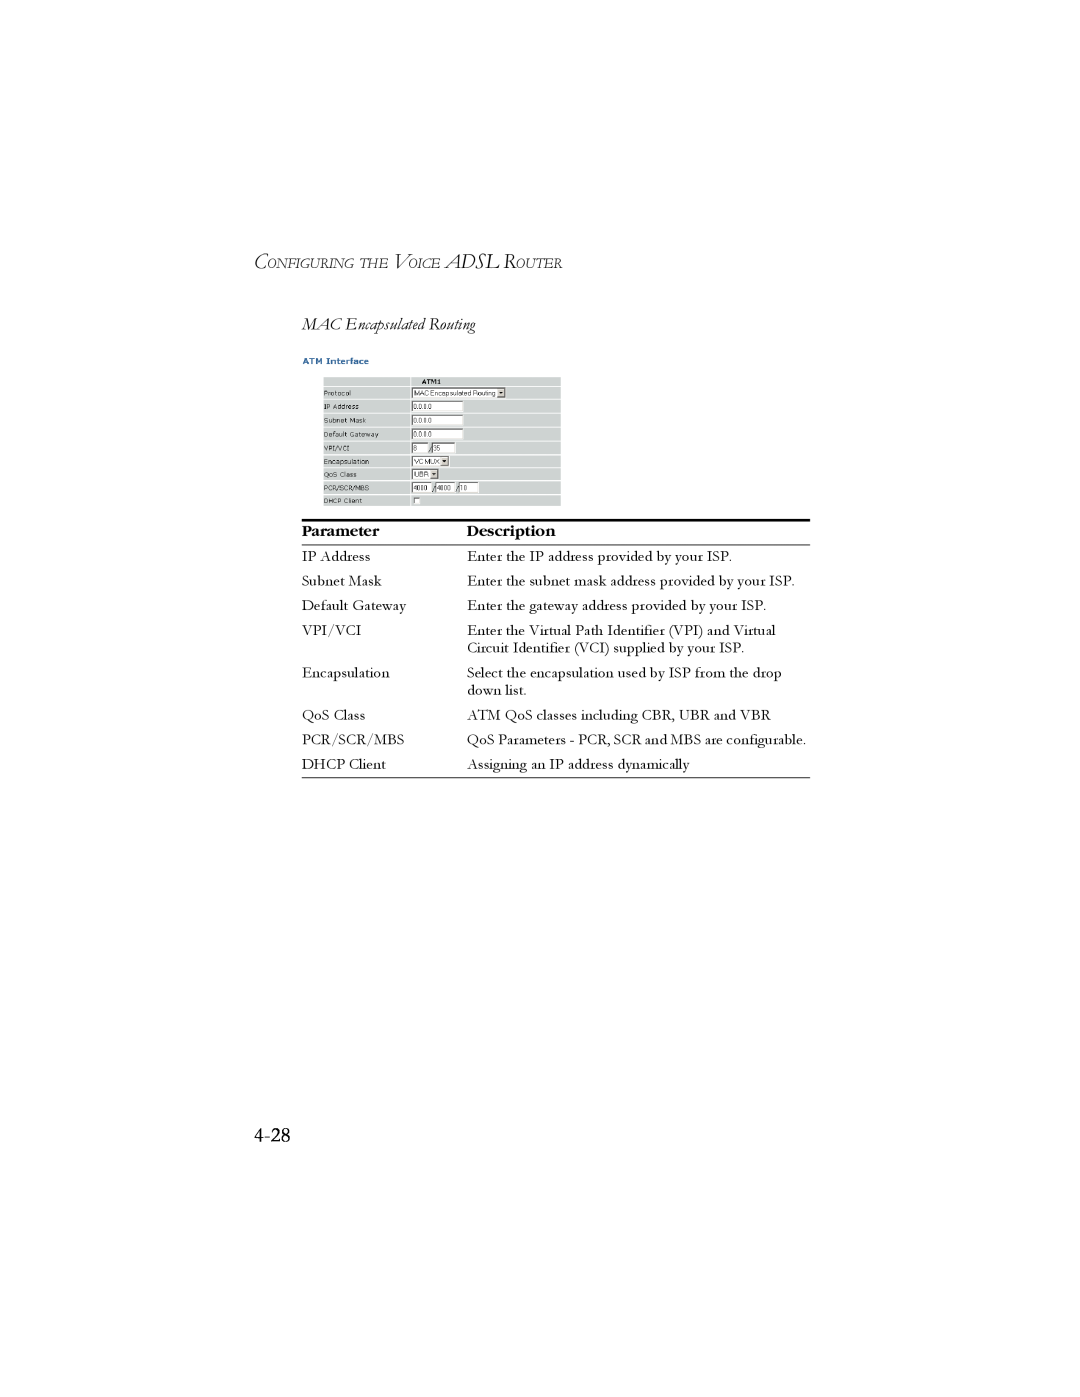 SMC Networks SMC7908VoWBRA manual 4-28, MAC Encapsulated Routing, Parameter, Description 